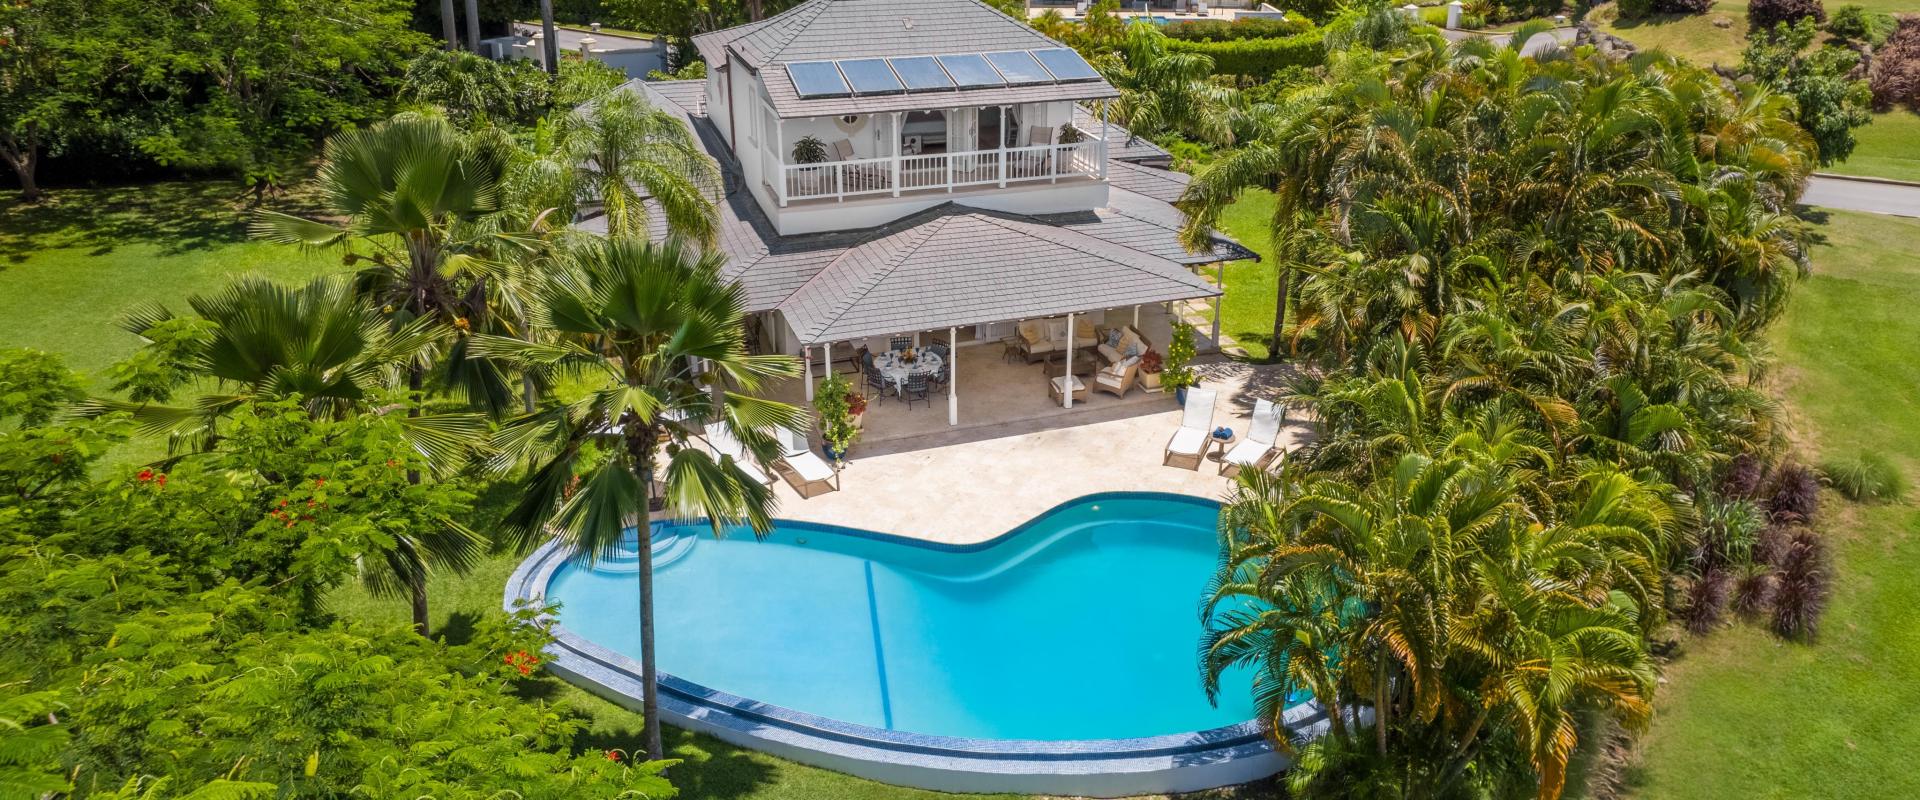 Villa Rosa Holiday Rental Villa In Royal Westmoreland Barbados Aerial Shot Of Pool and Home Exterior